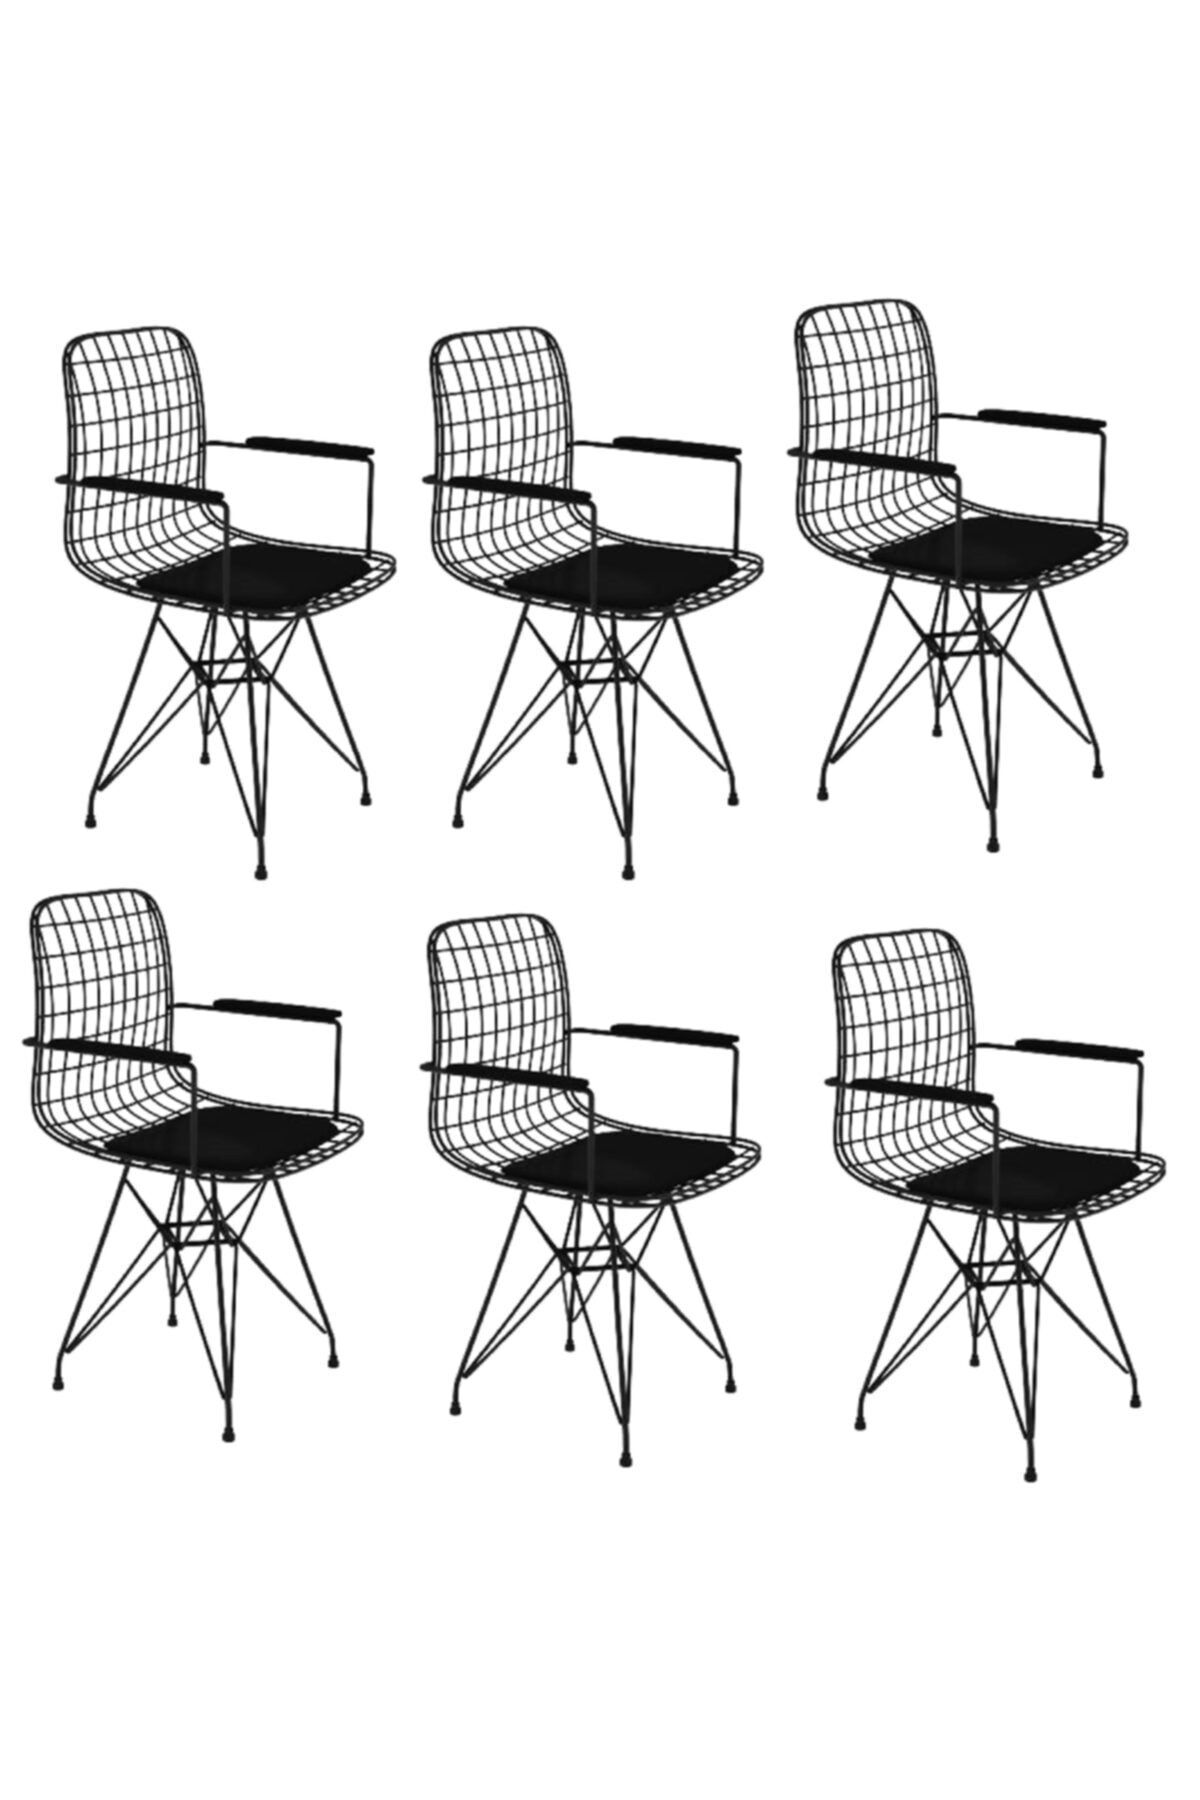 Kenzlife Knsz kafes tel sandalyesi 6 lı mazlum syhsyh kolçaklı ofis cafe bahçe mutfak